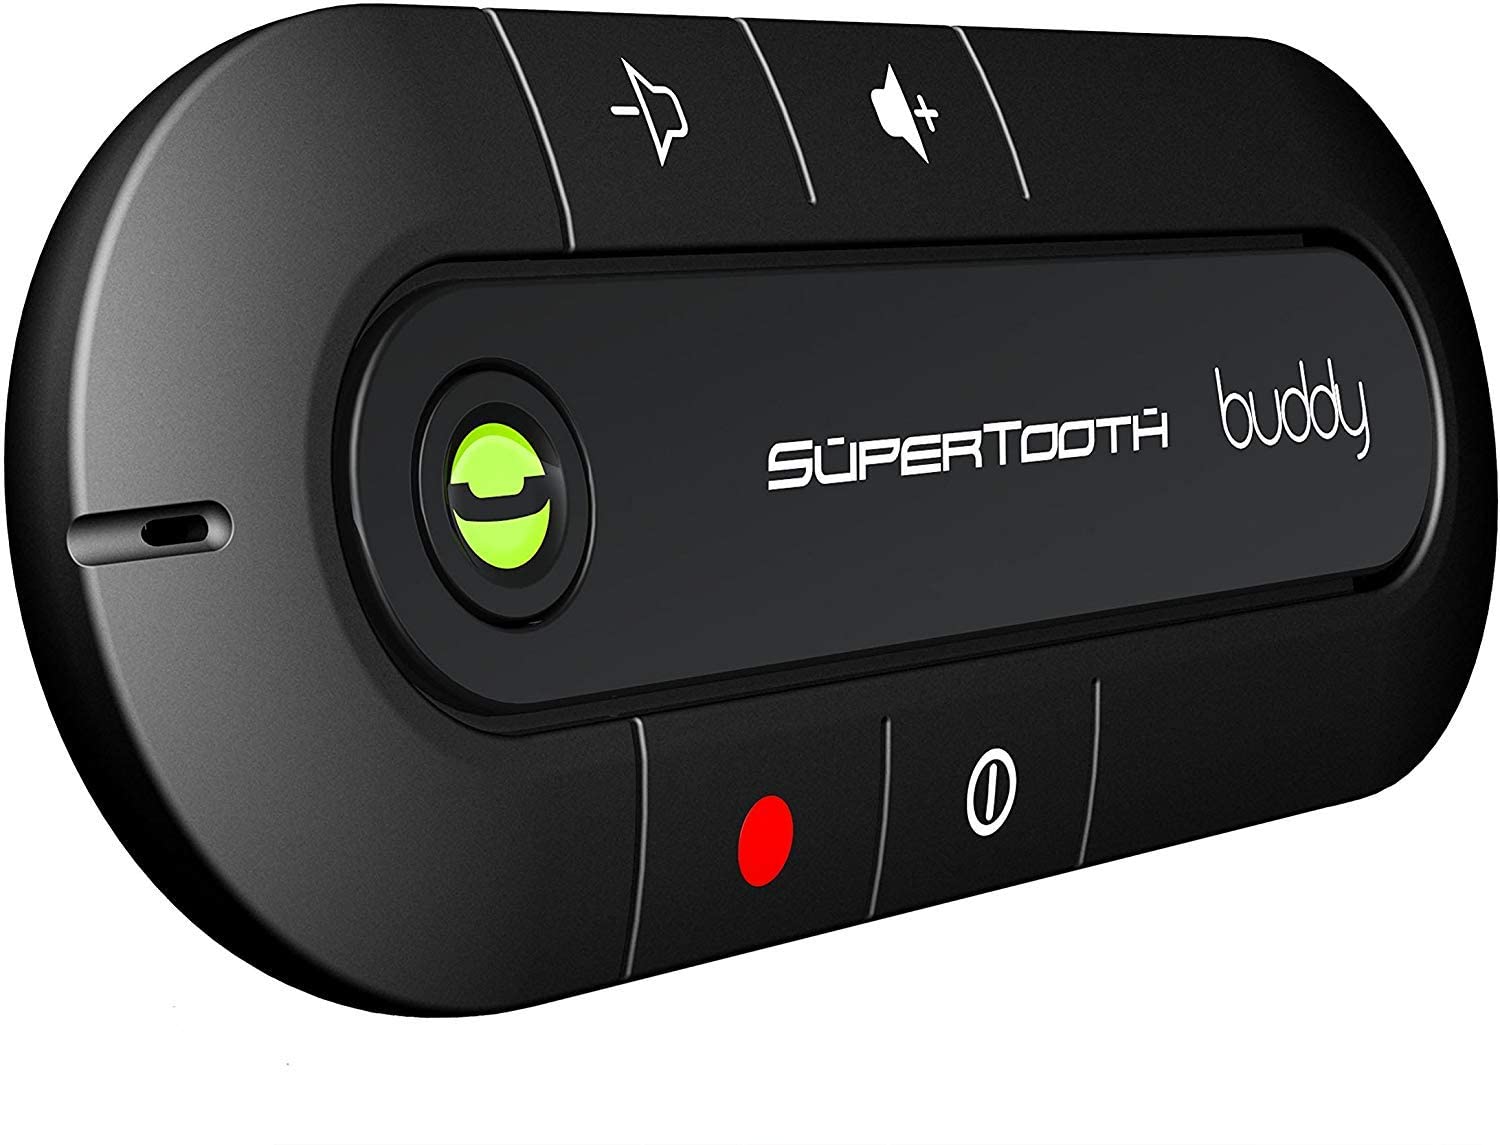 SuperTooth Buddy Bluetooth